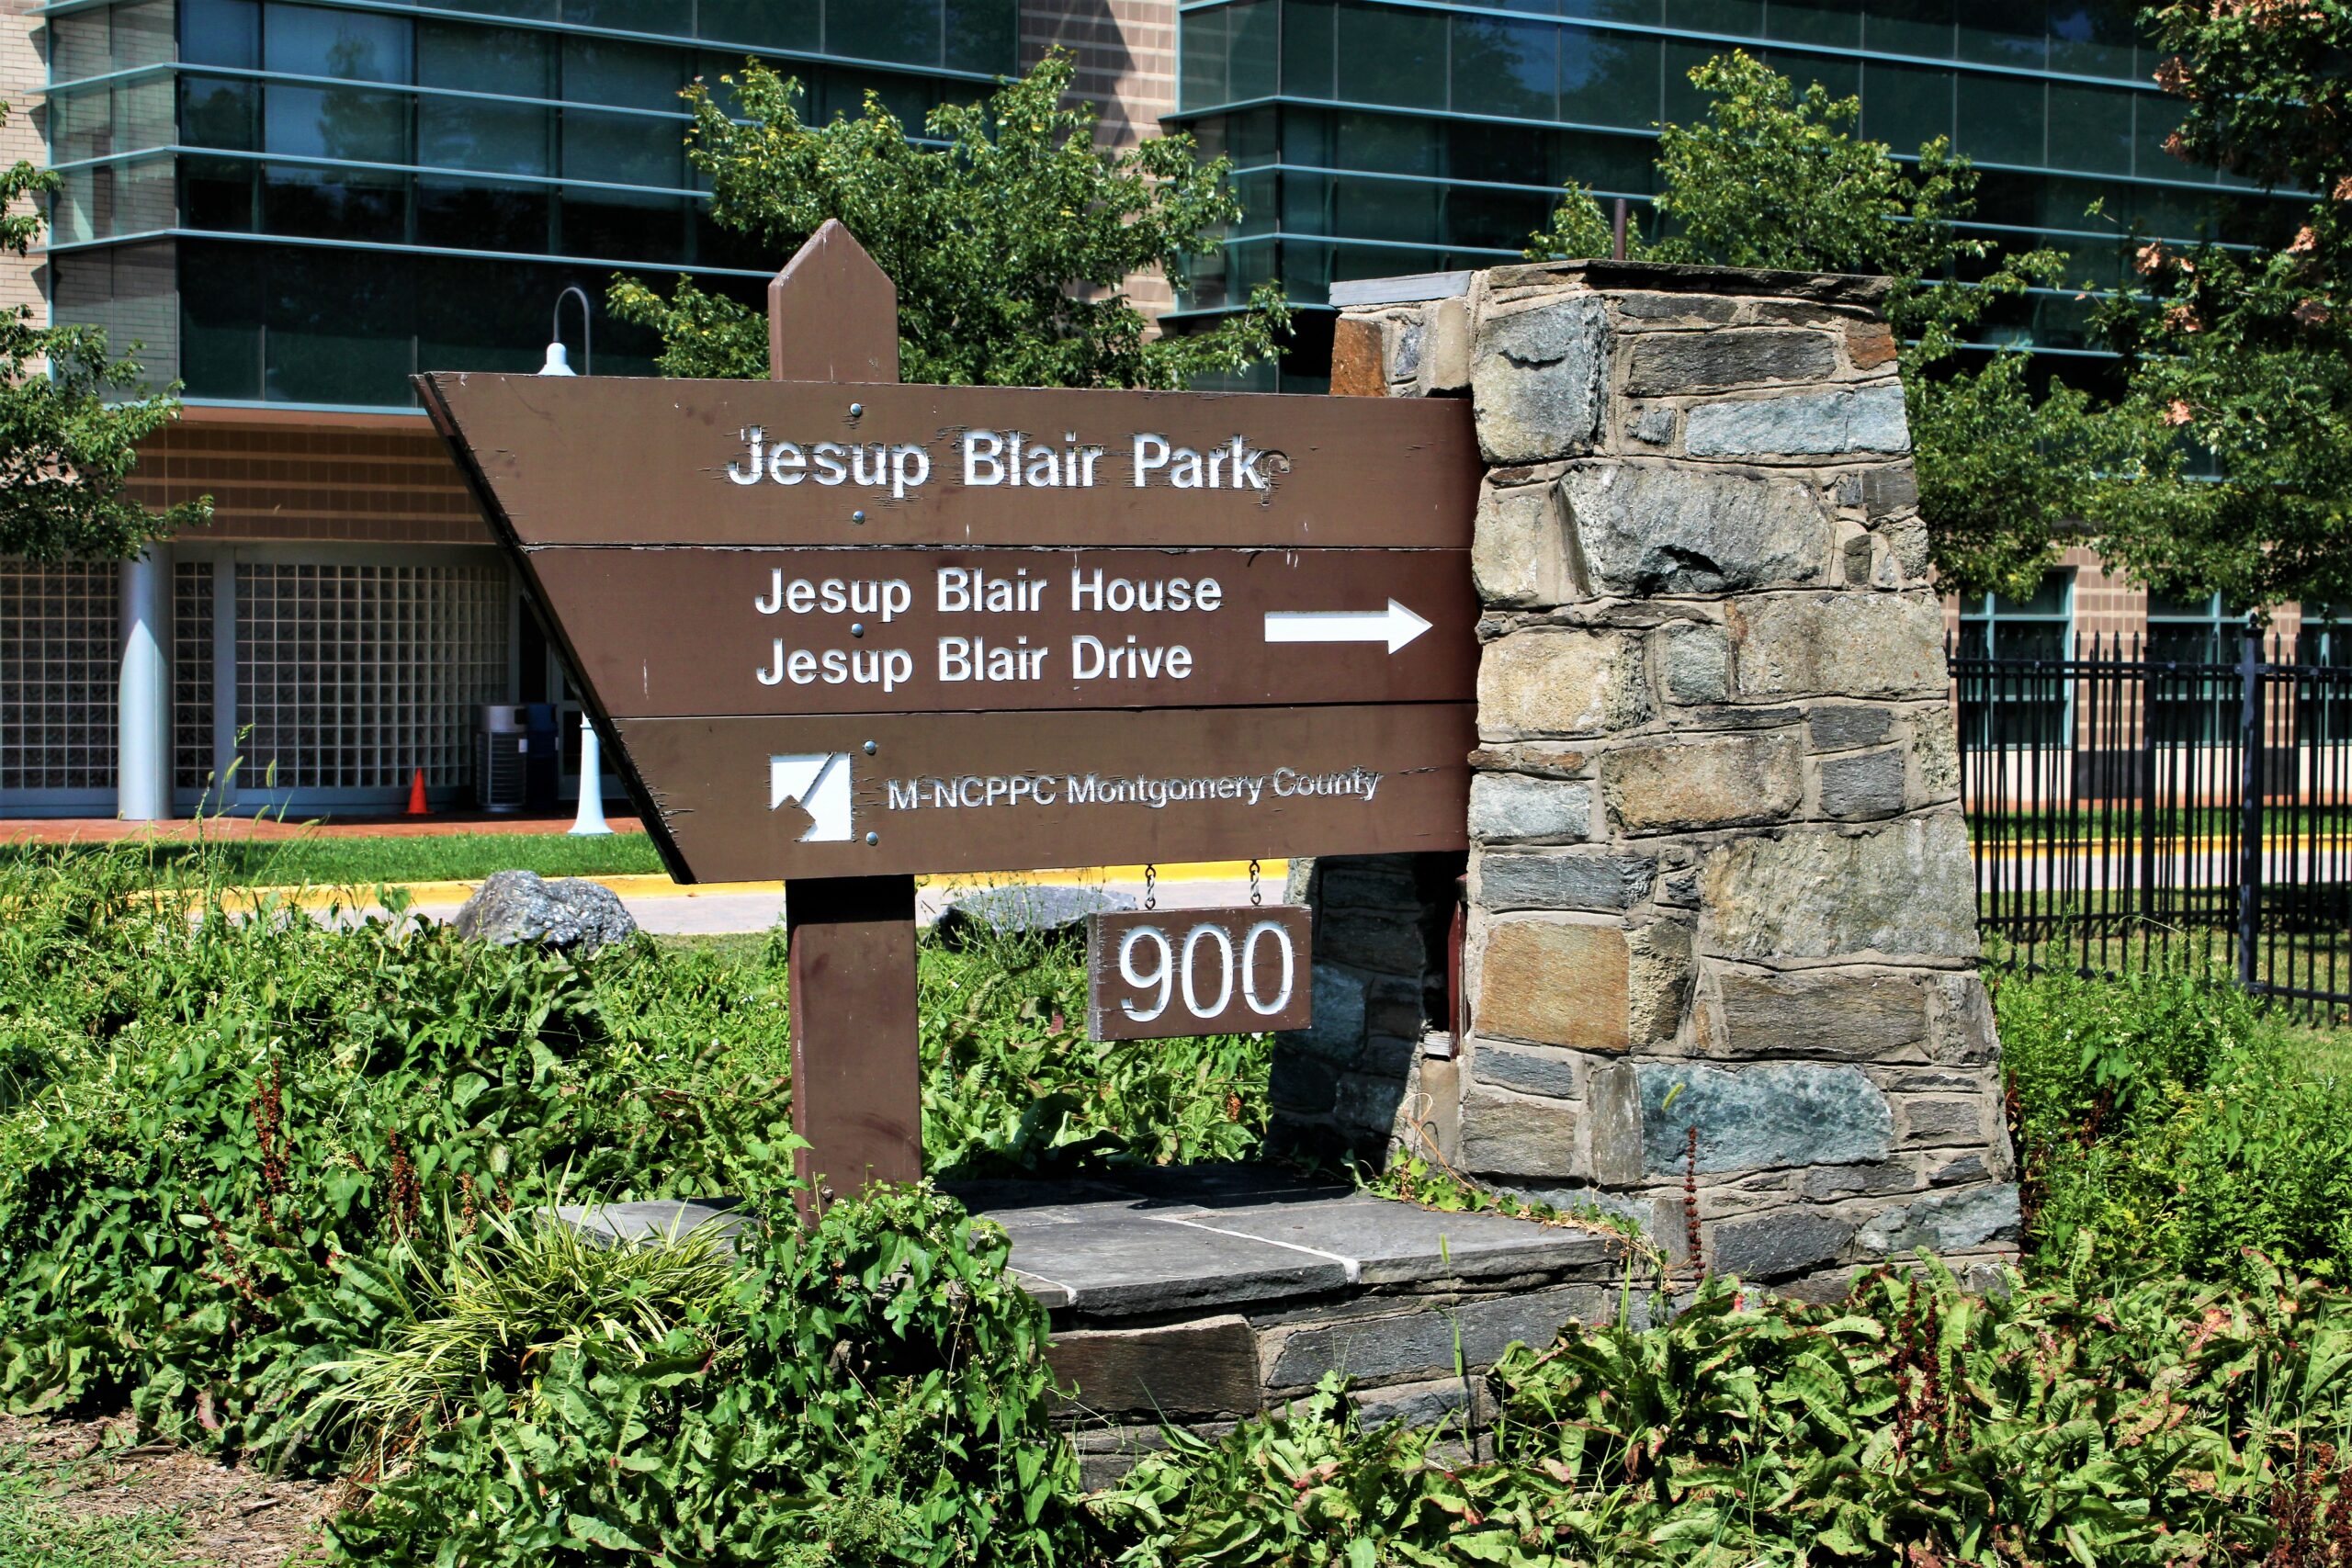 蒙哥马利公园寻求公众对杰萨普·布莱尔公园翻新计划的意见